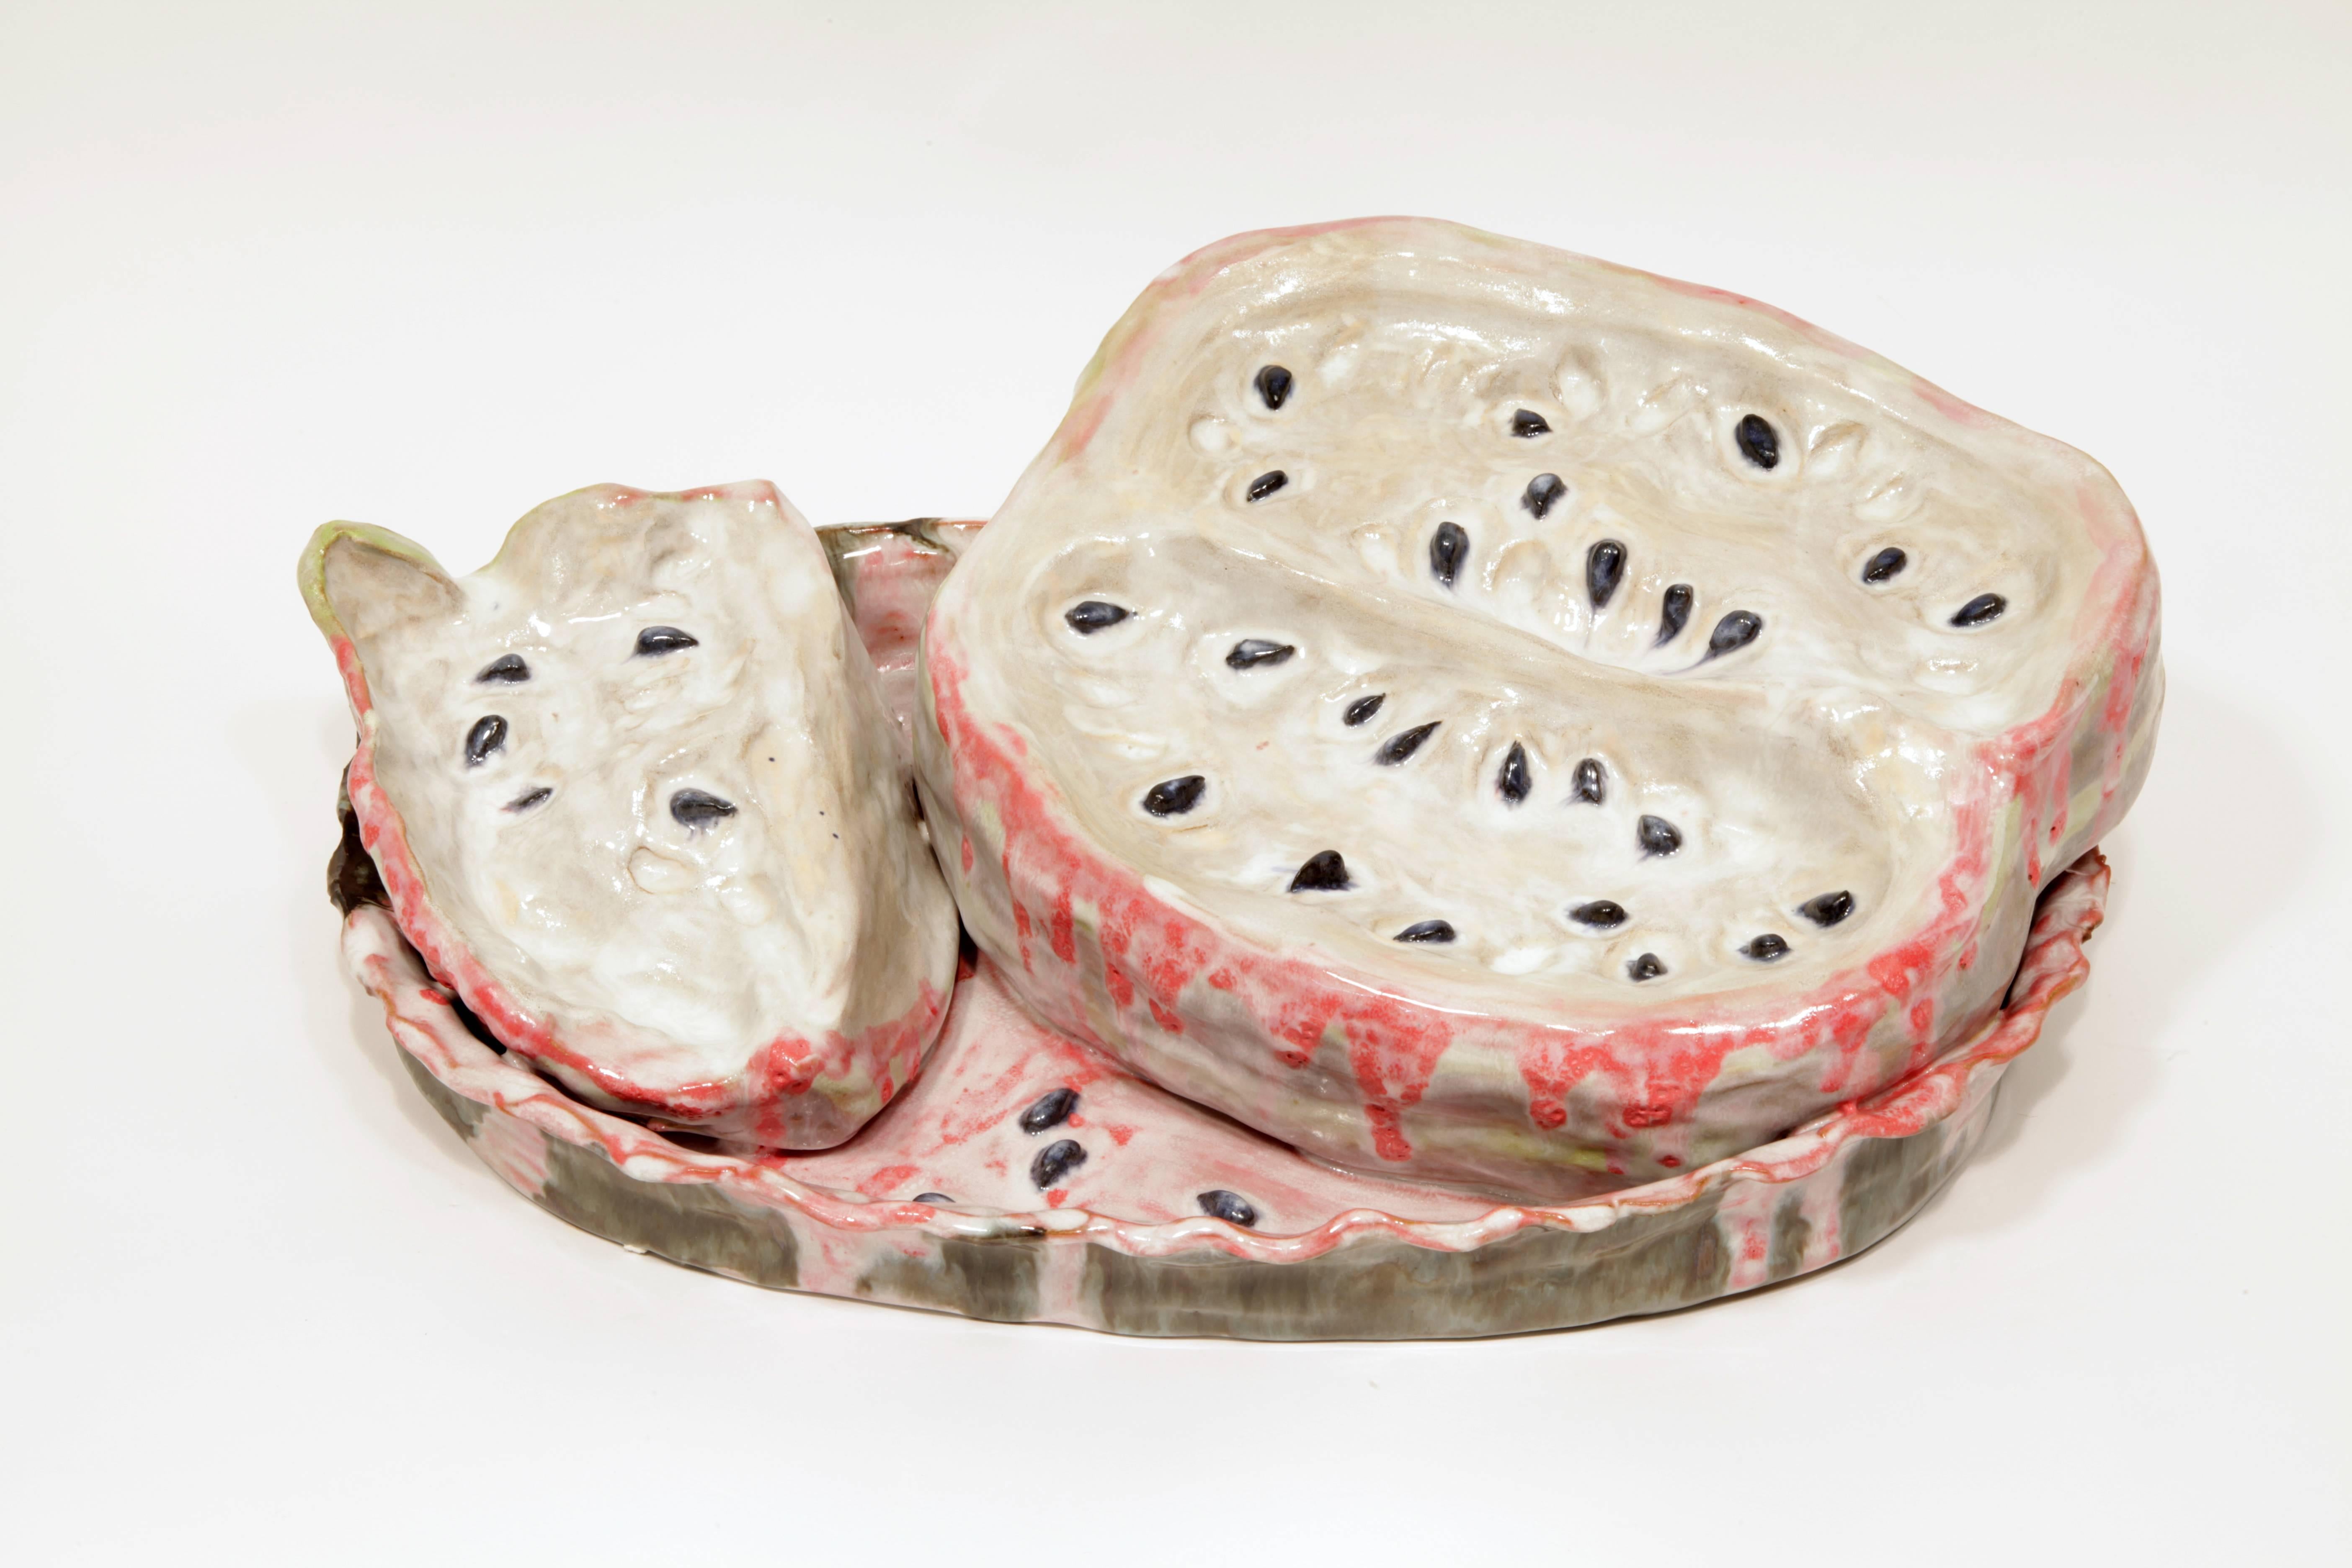 Valerie Hegarty Still-Life Sculpture - Watermelon Skulls